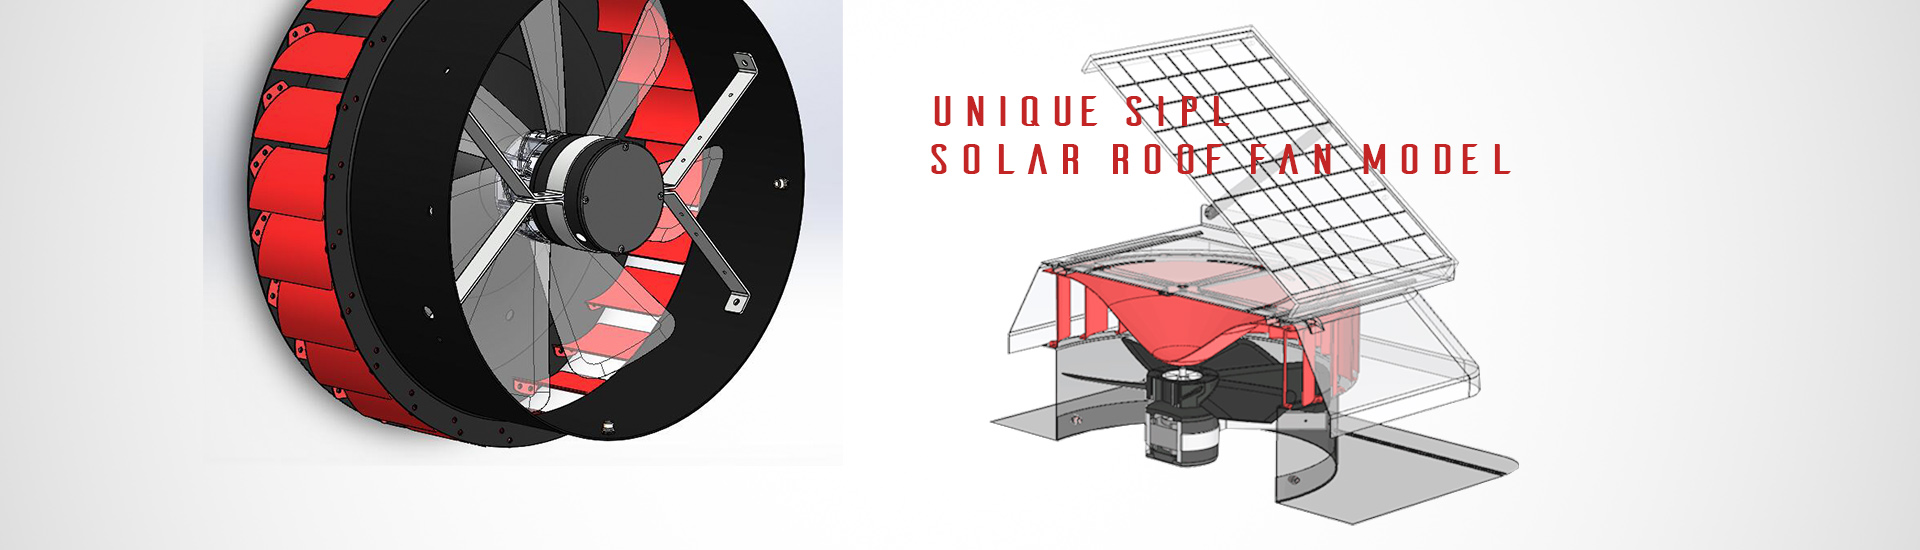 Solar Roof Fan